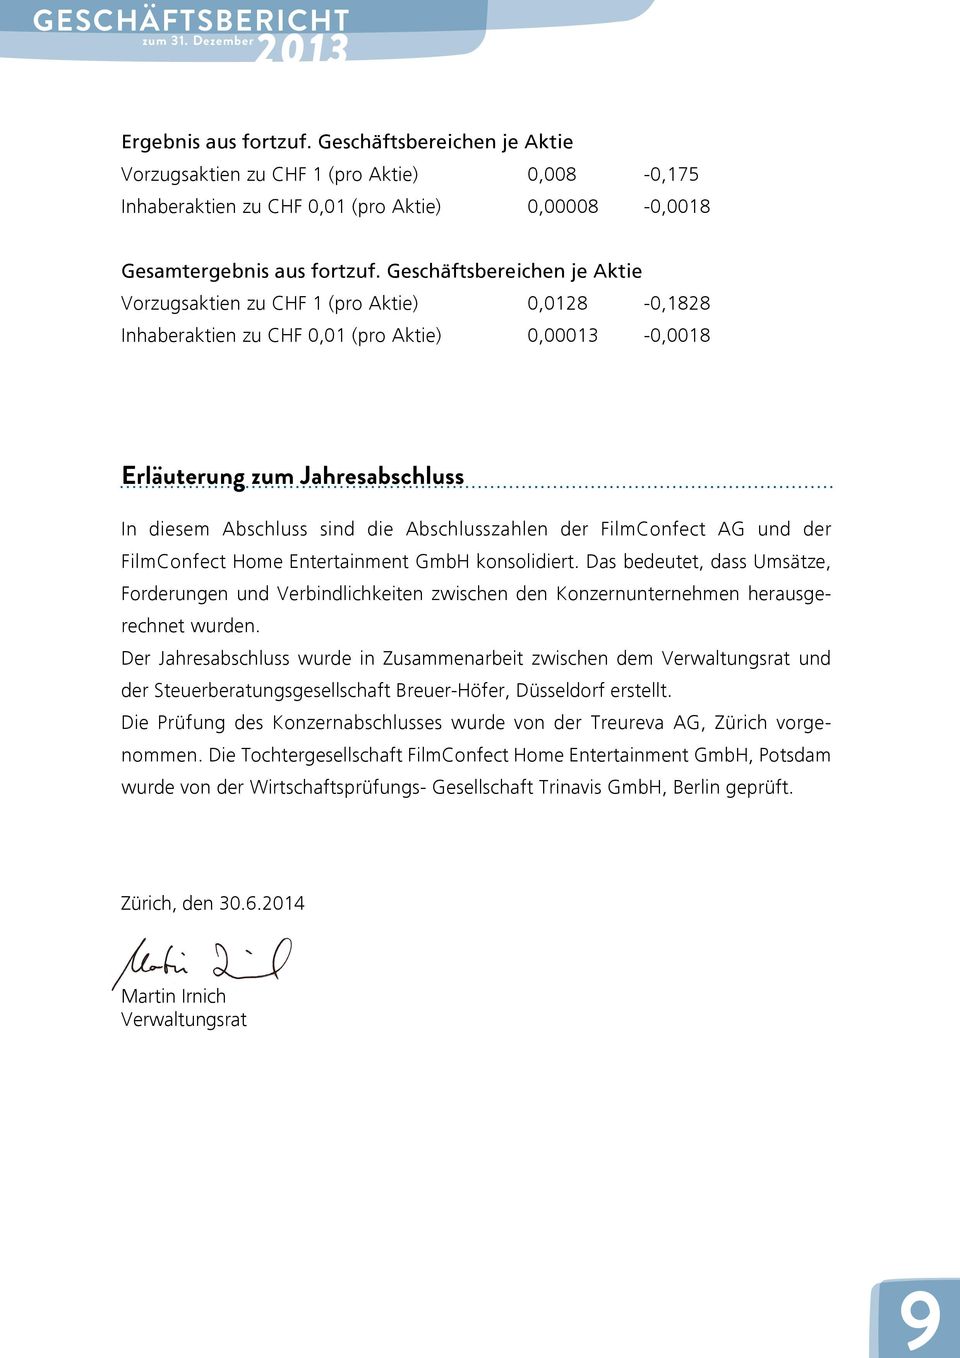 Abschlusszahlen der FilmConfect AG und der FilmConfect Home Entertainment GmbH konsolidiert.